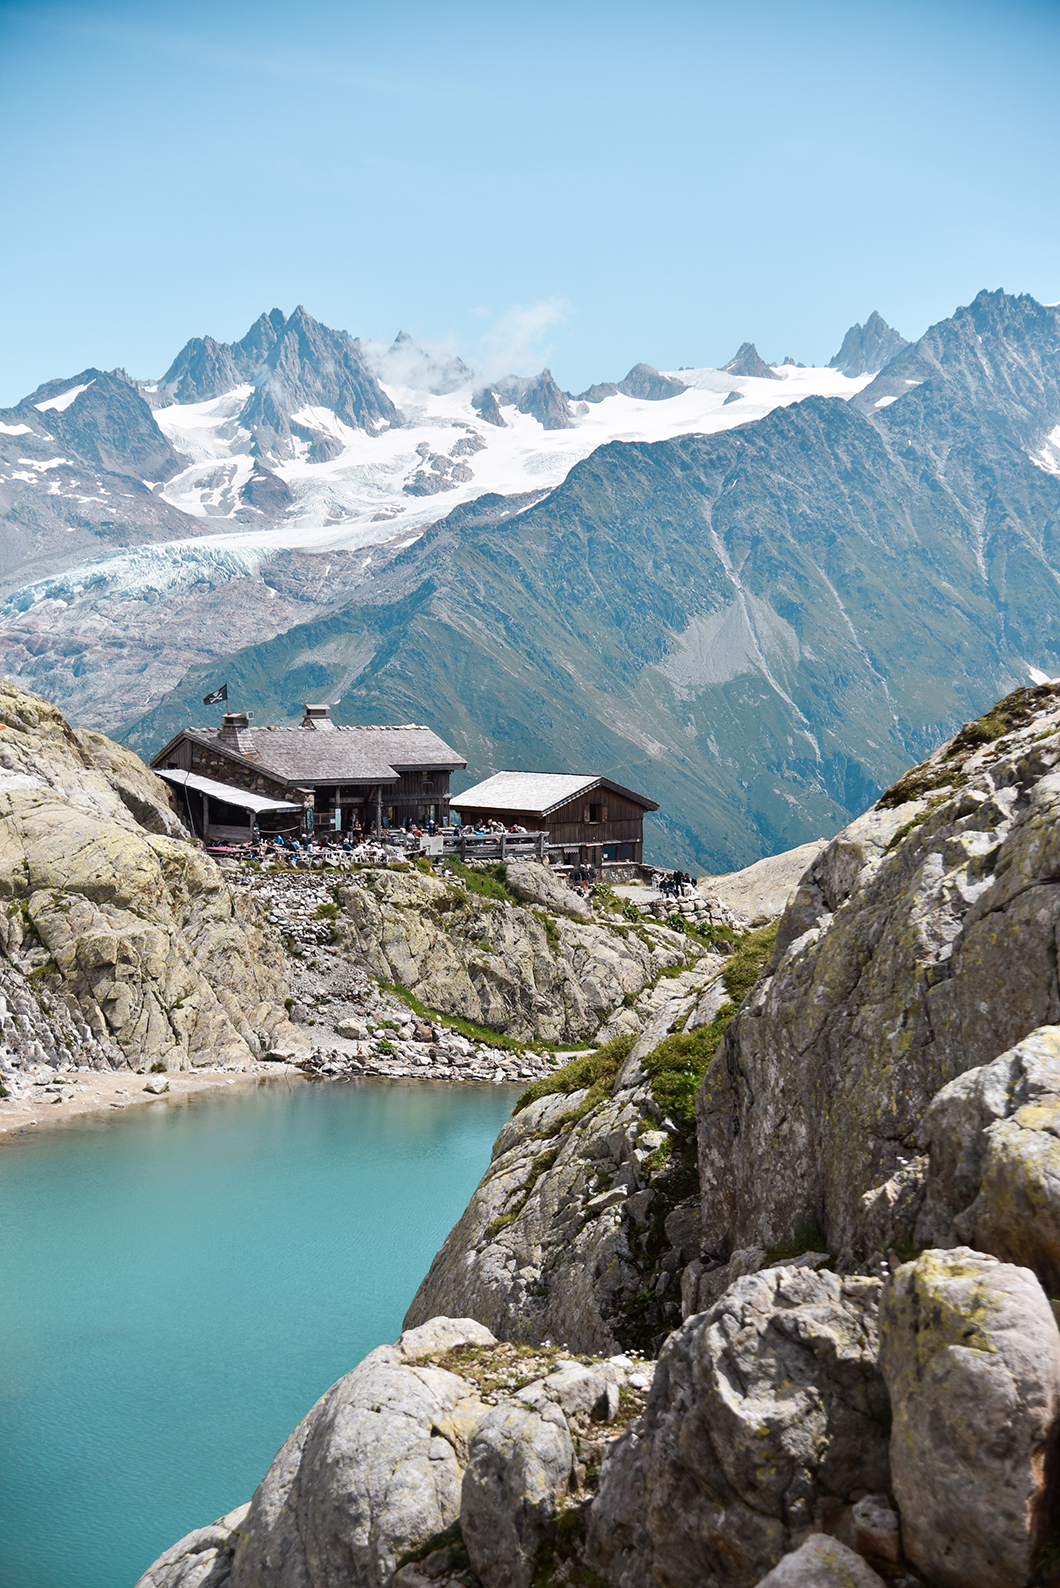 Vacances à la montagne à Chamonix